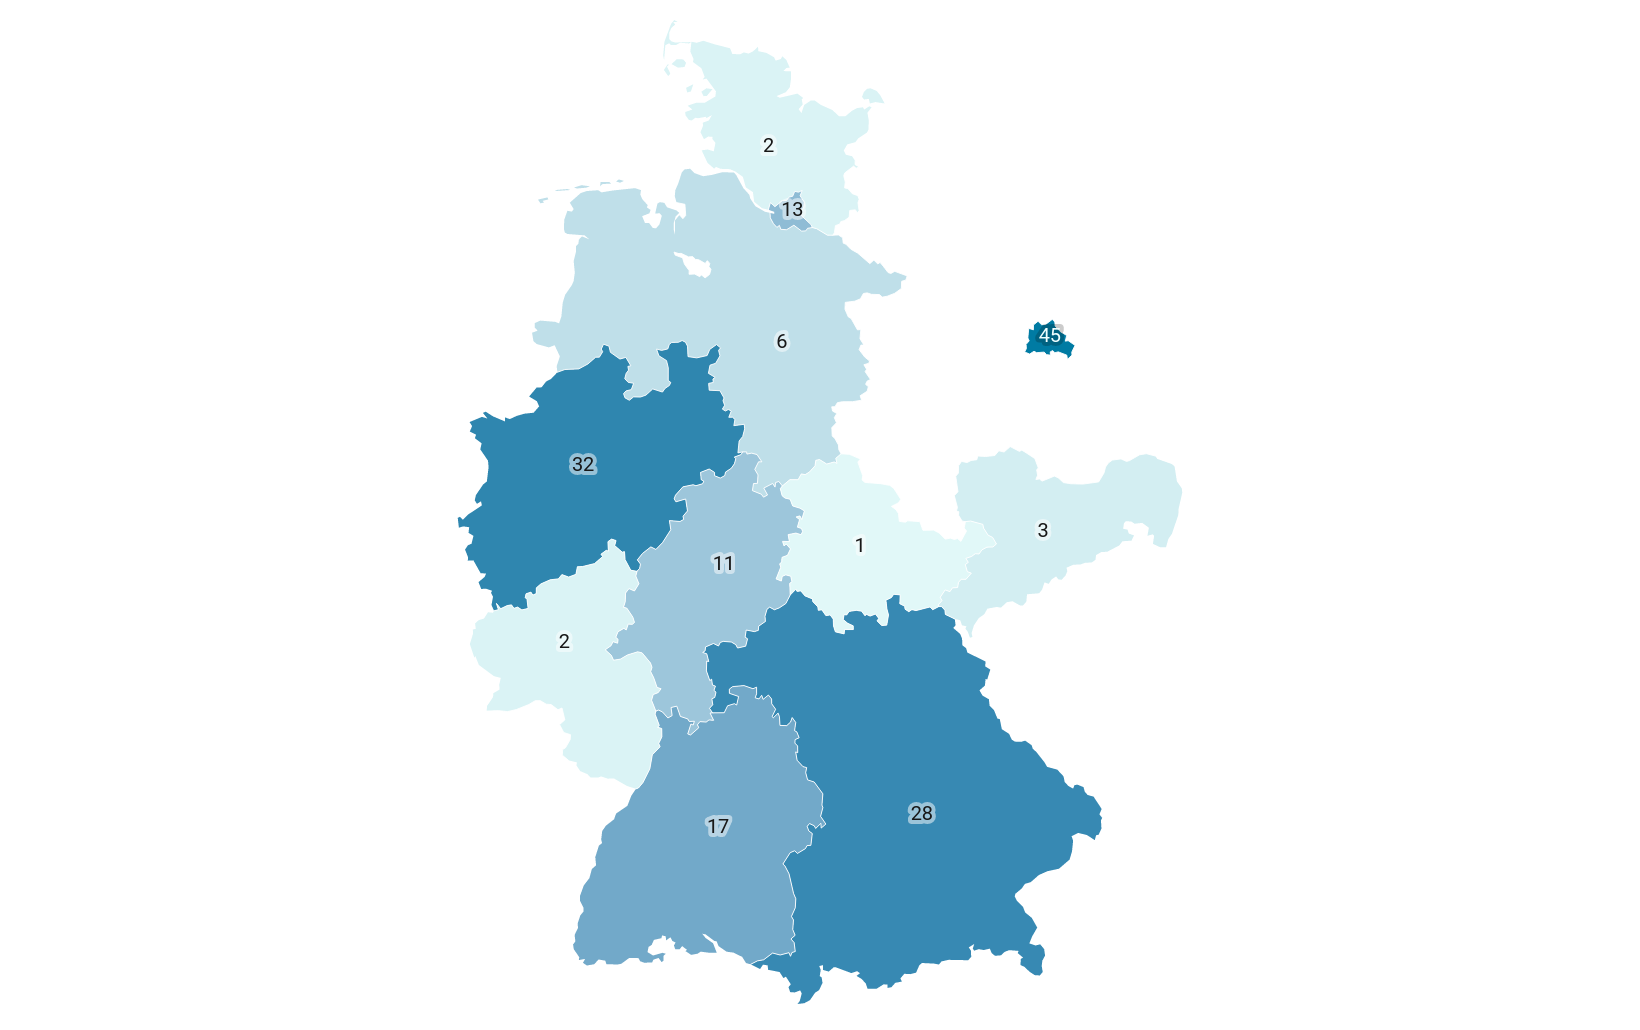 Die Abbildungs zeigt die Verteilung von MPO nach Bundesland